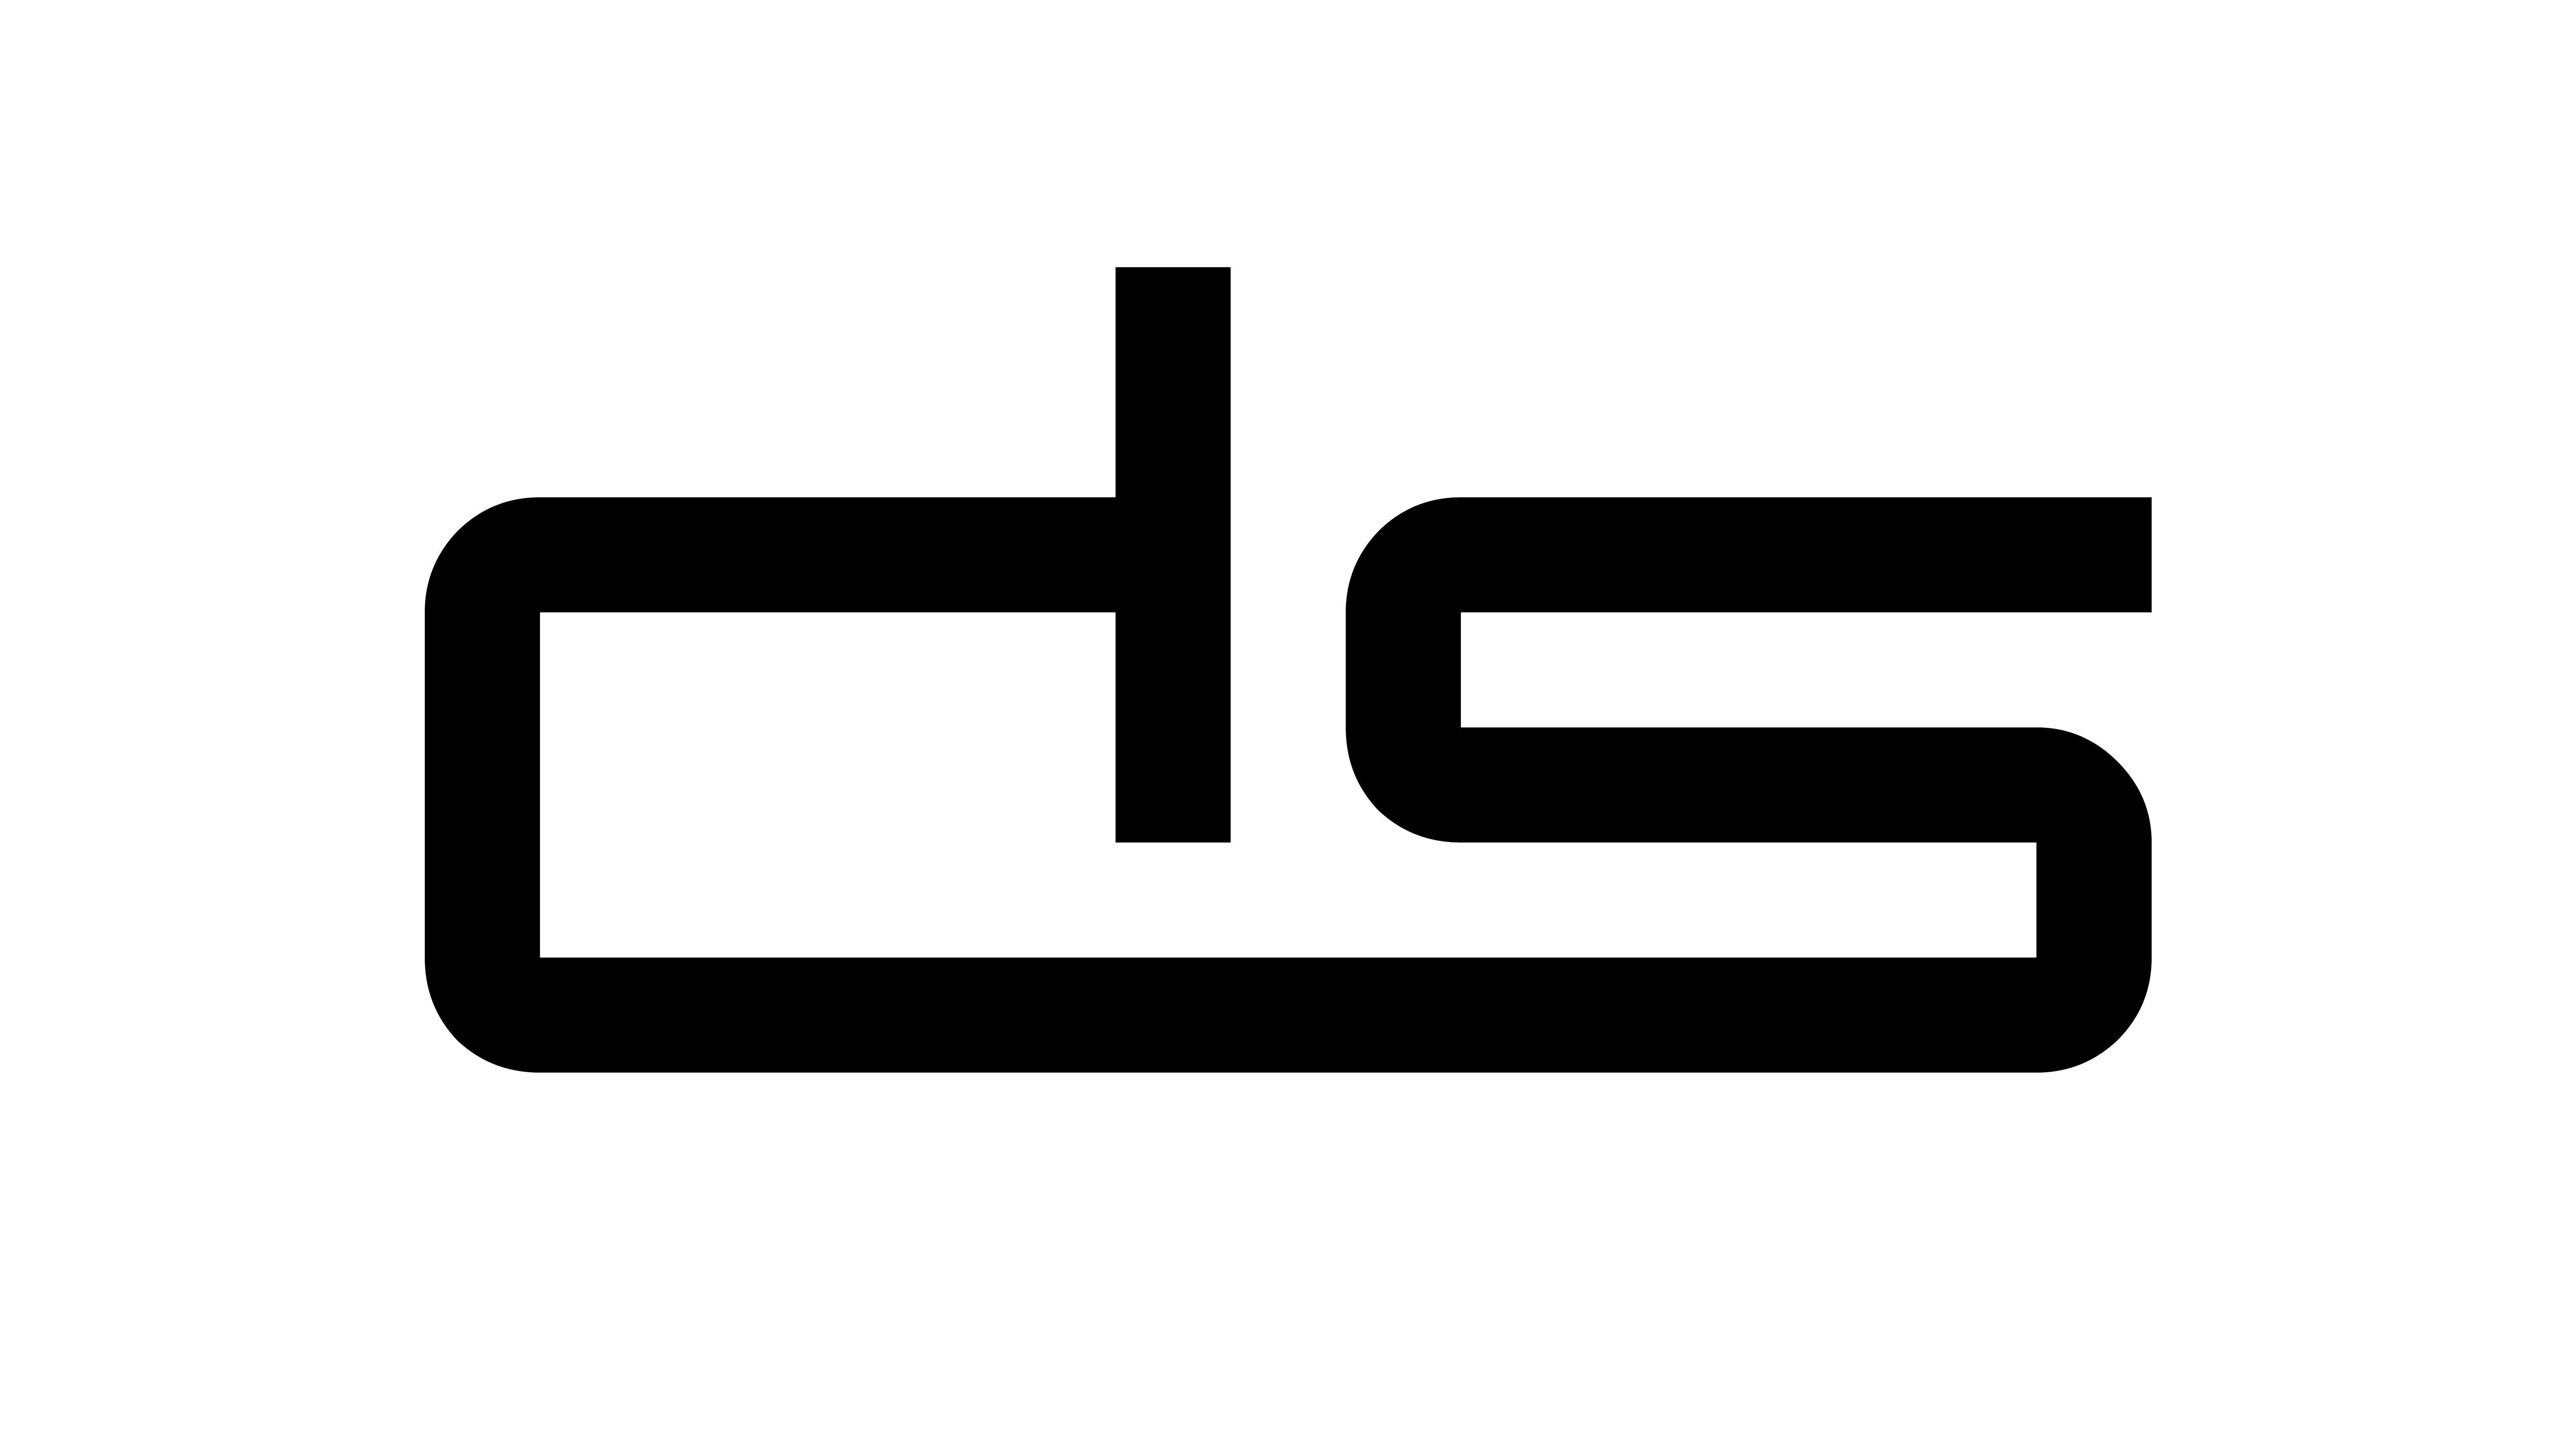 DS Logo - File:Ds-logo.jpg - Wikimedia Commons